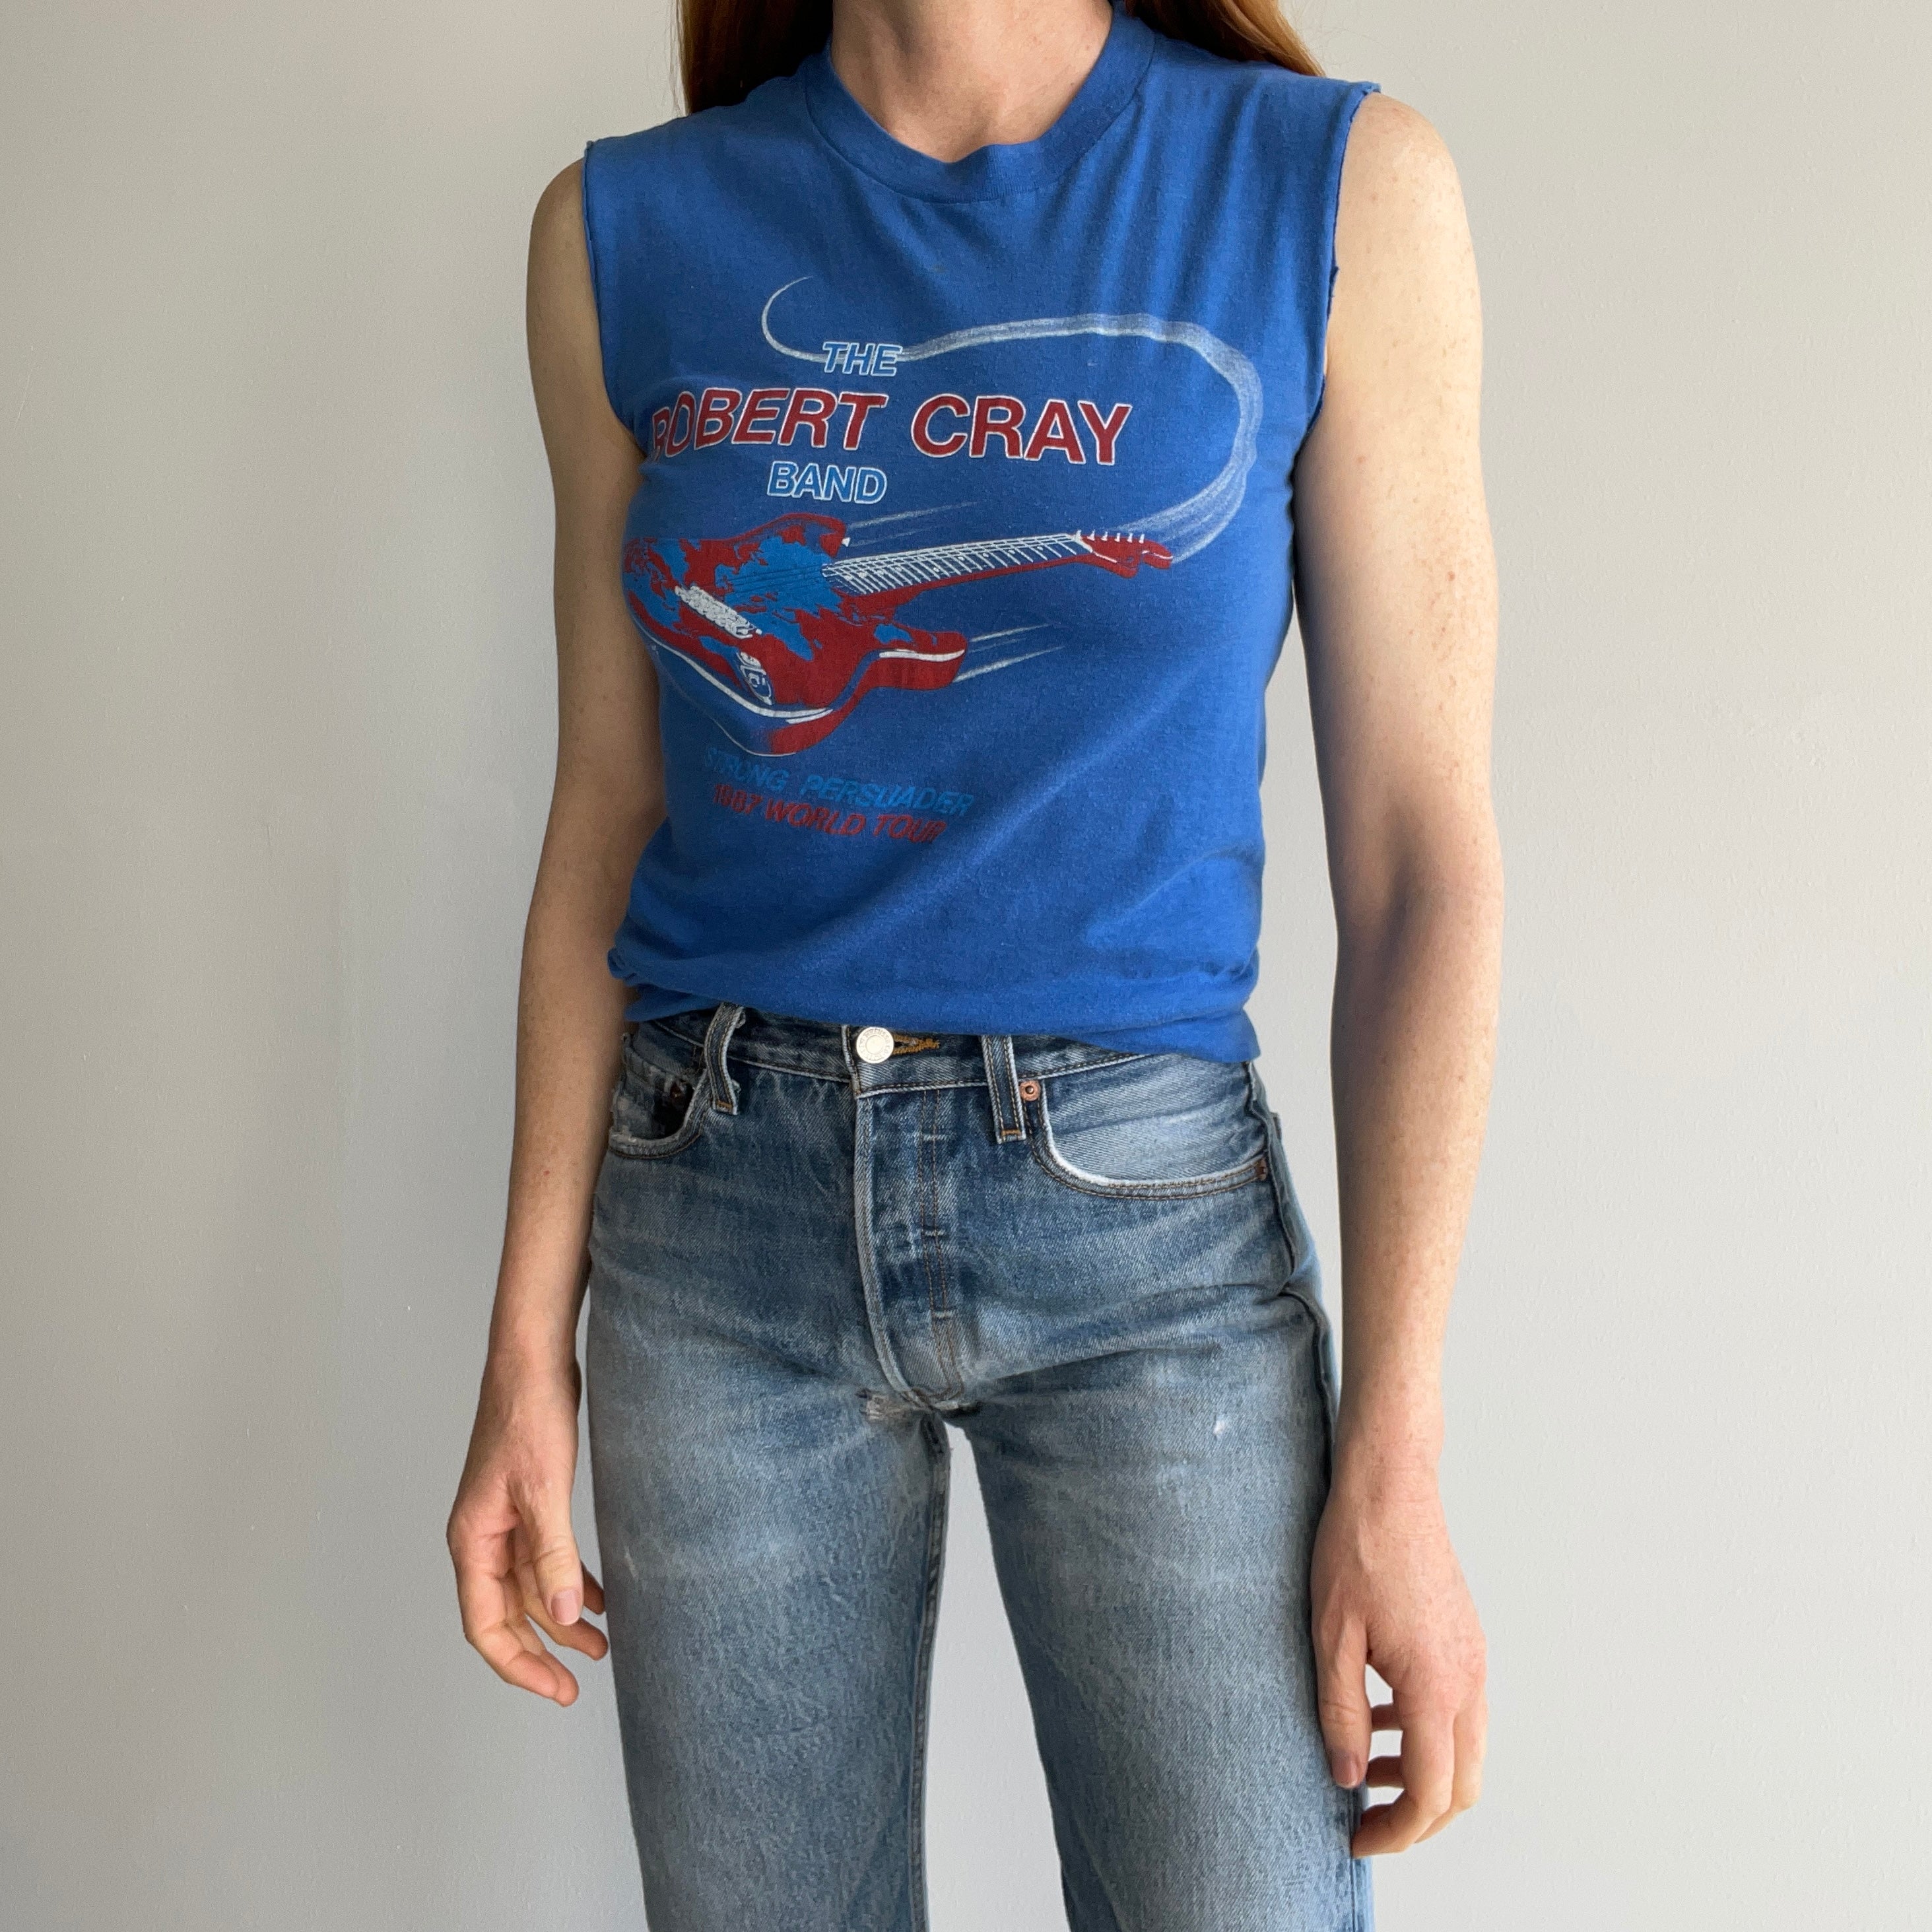 1987 The Robert Cray Band Tour T-Shirt